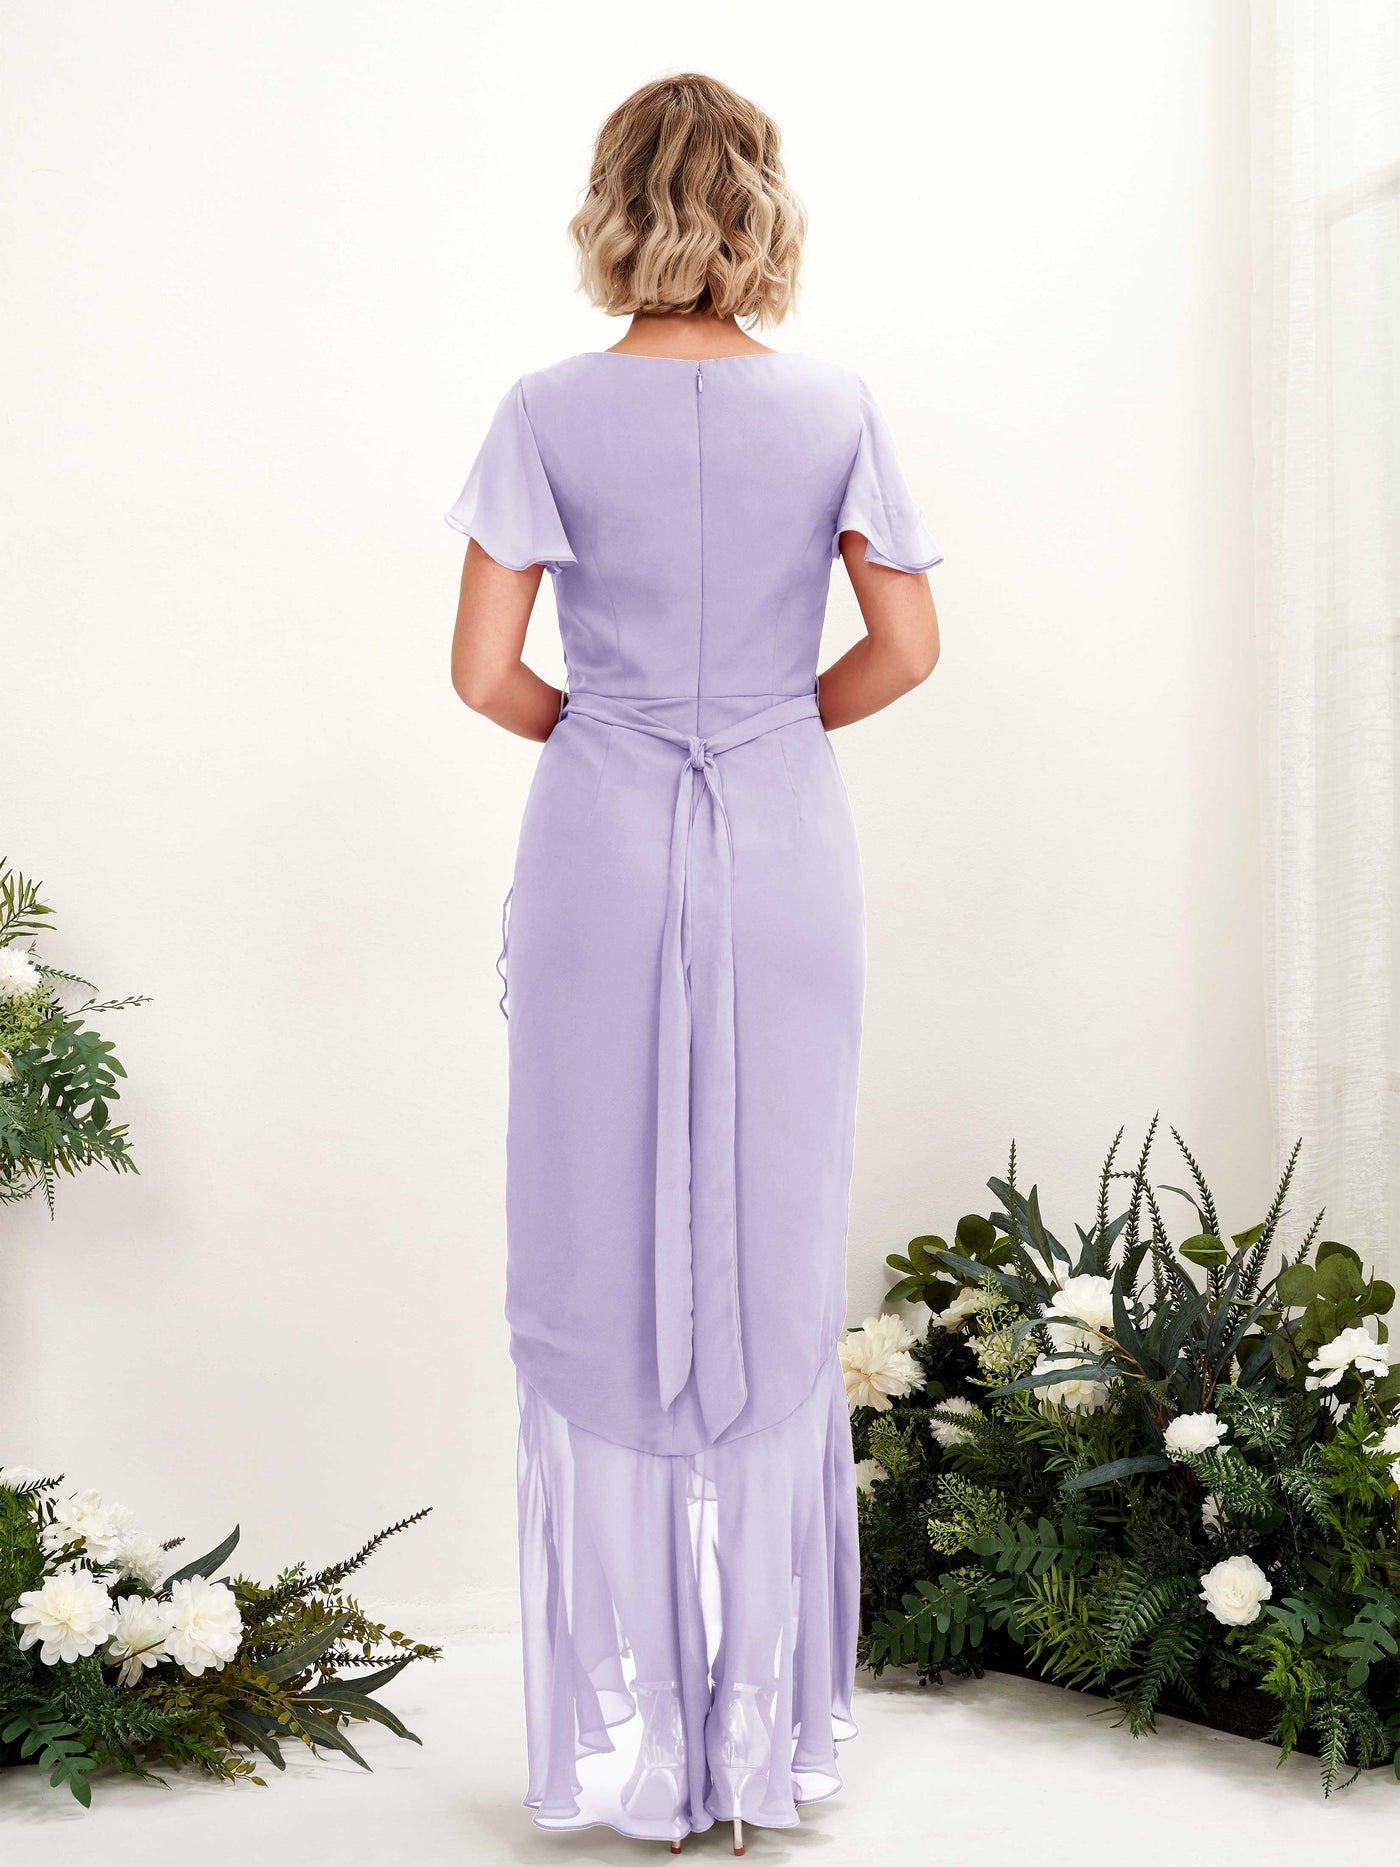 V-neck Short Sleeves Chiffon Bridesmaid Dress - Lilac (81226214)#color_lilac